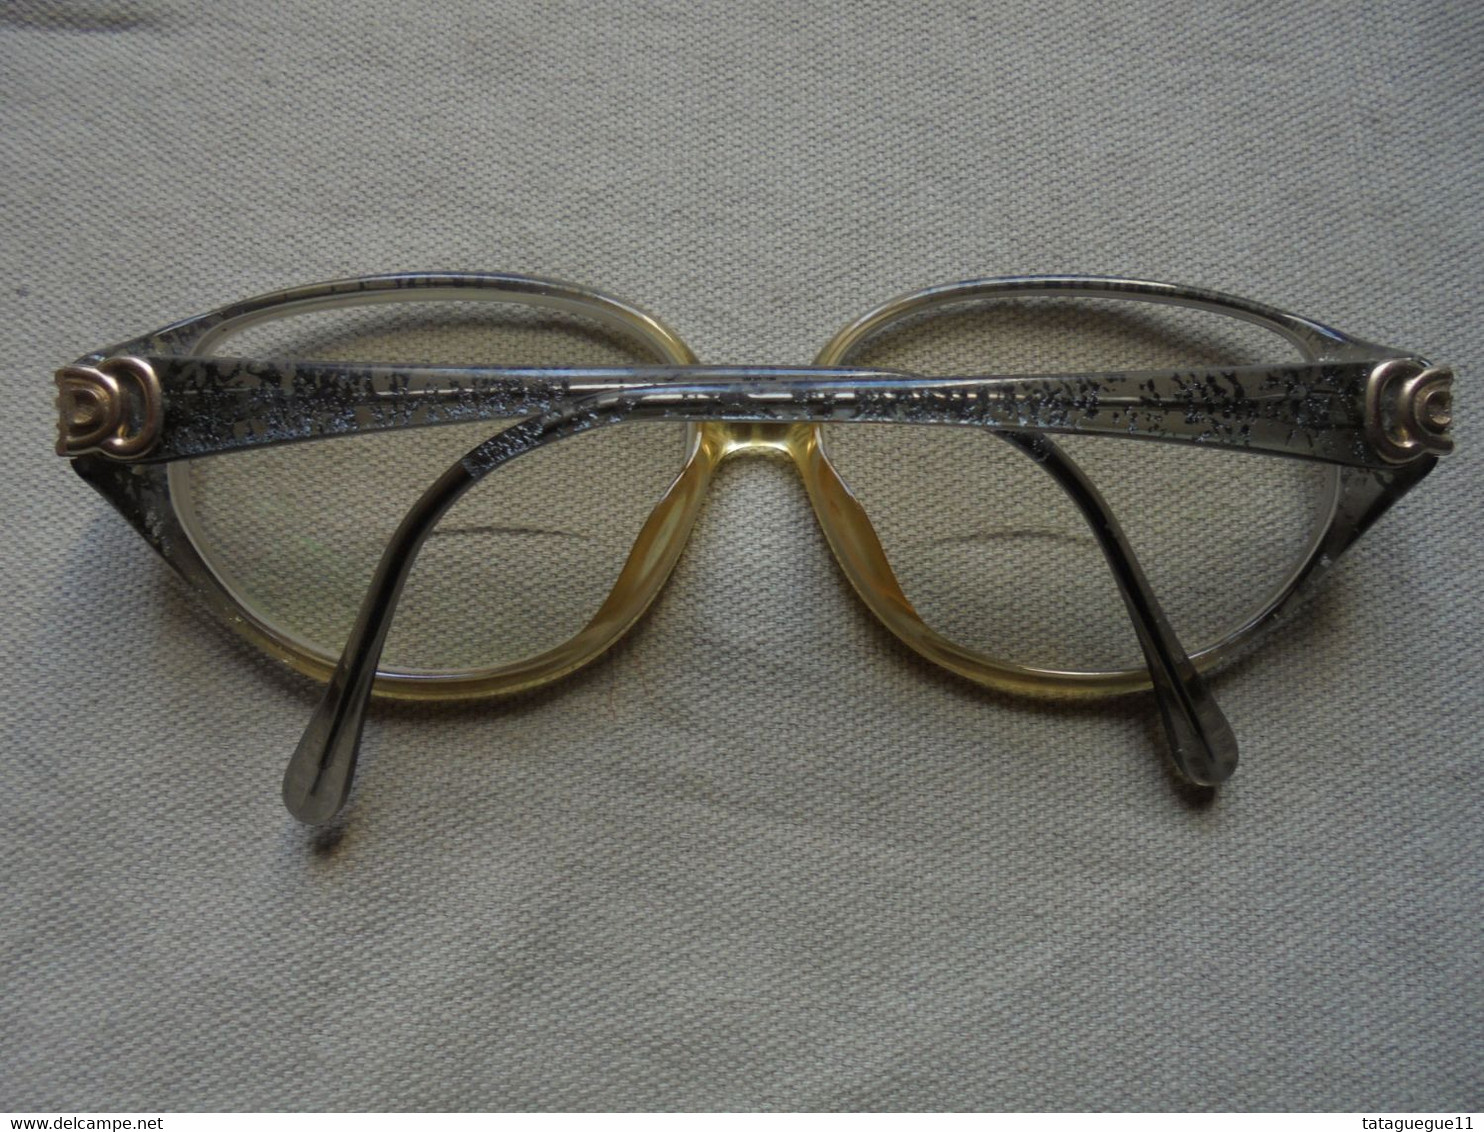 Vintage - Paire de lunettes de vue CD/Frame pour femme